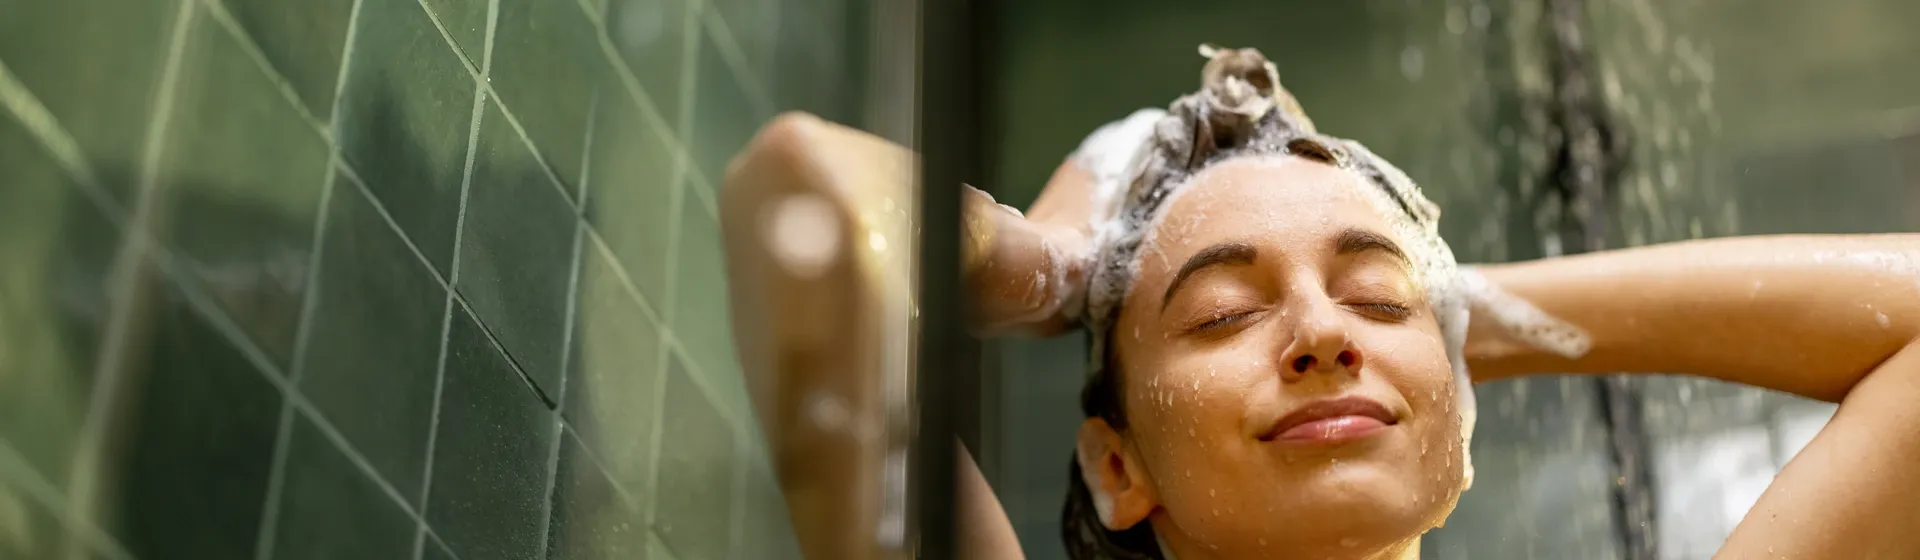 Shampoo para dermatite seborreica: 8 opções para tratar o couro cabeludo